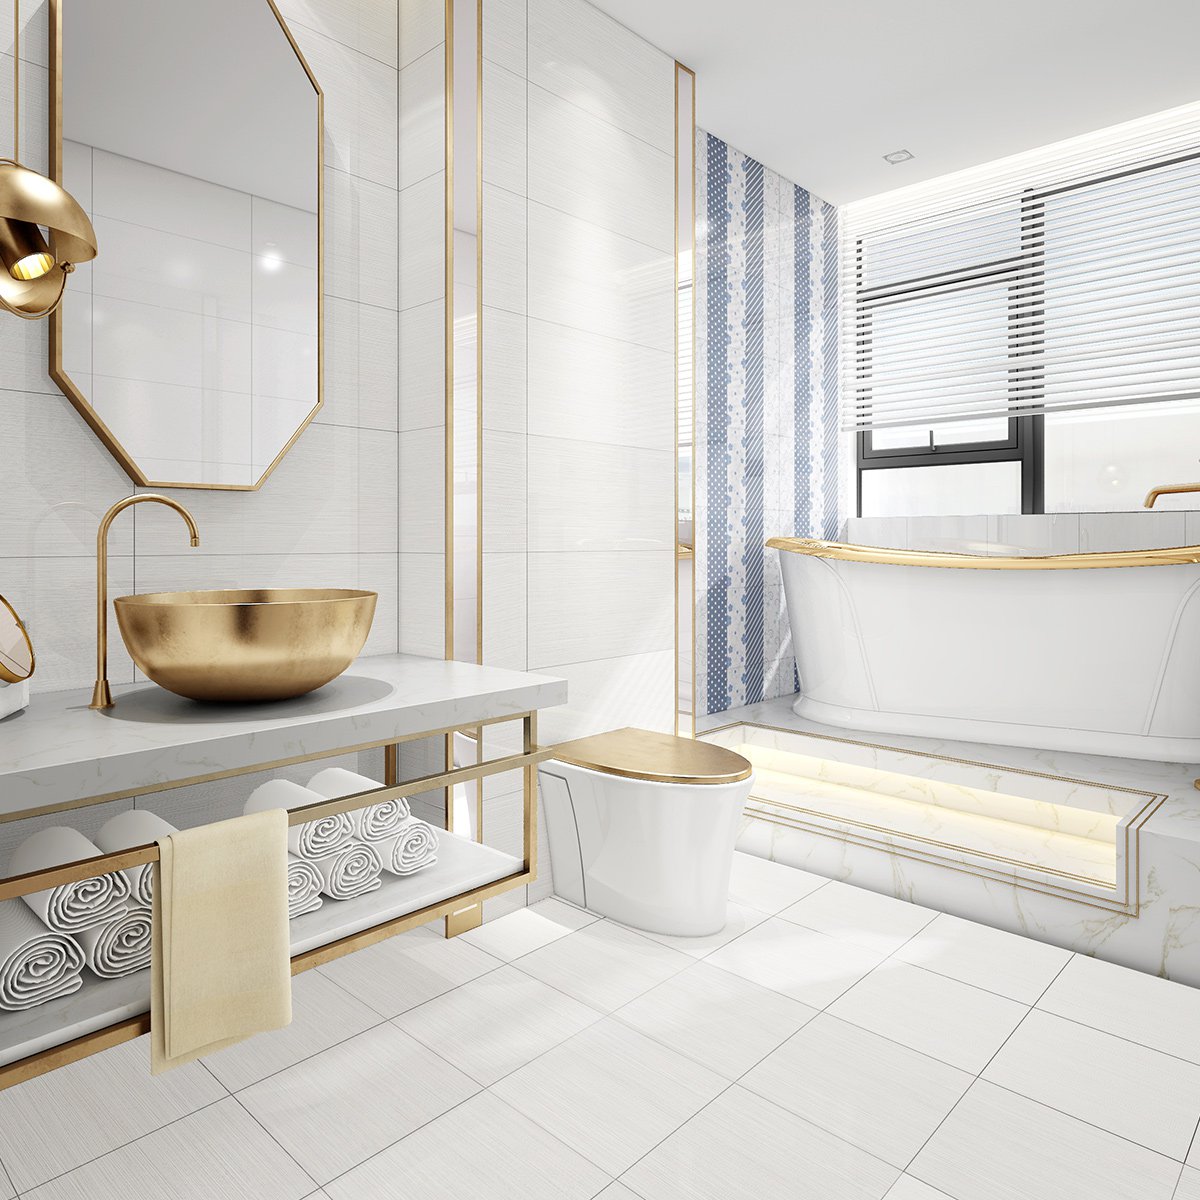 新中源瓷砖卫生间地板砖简约现代浴室防滑地砖300x600厨房墙砖爱丽丝